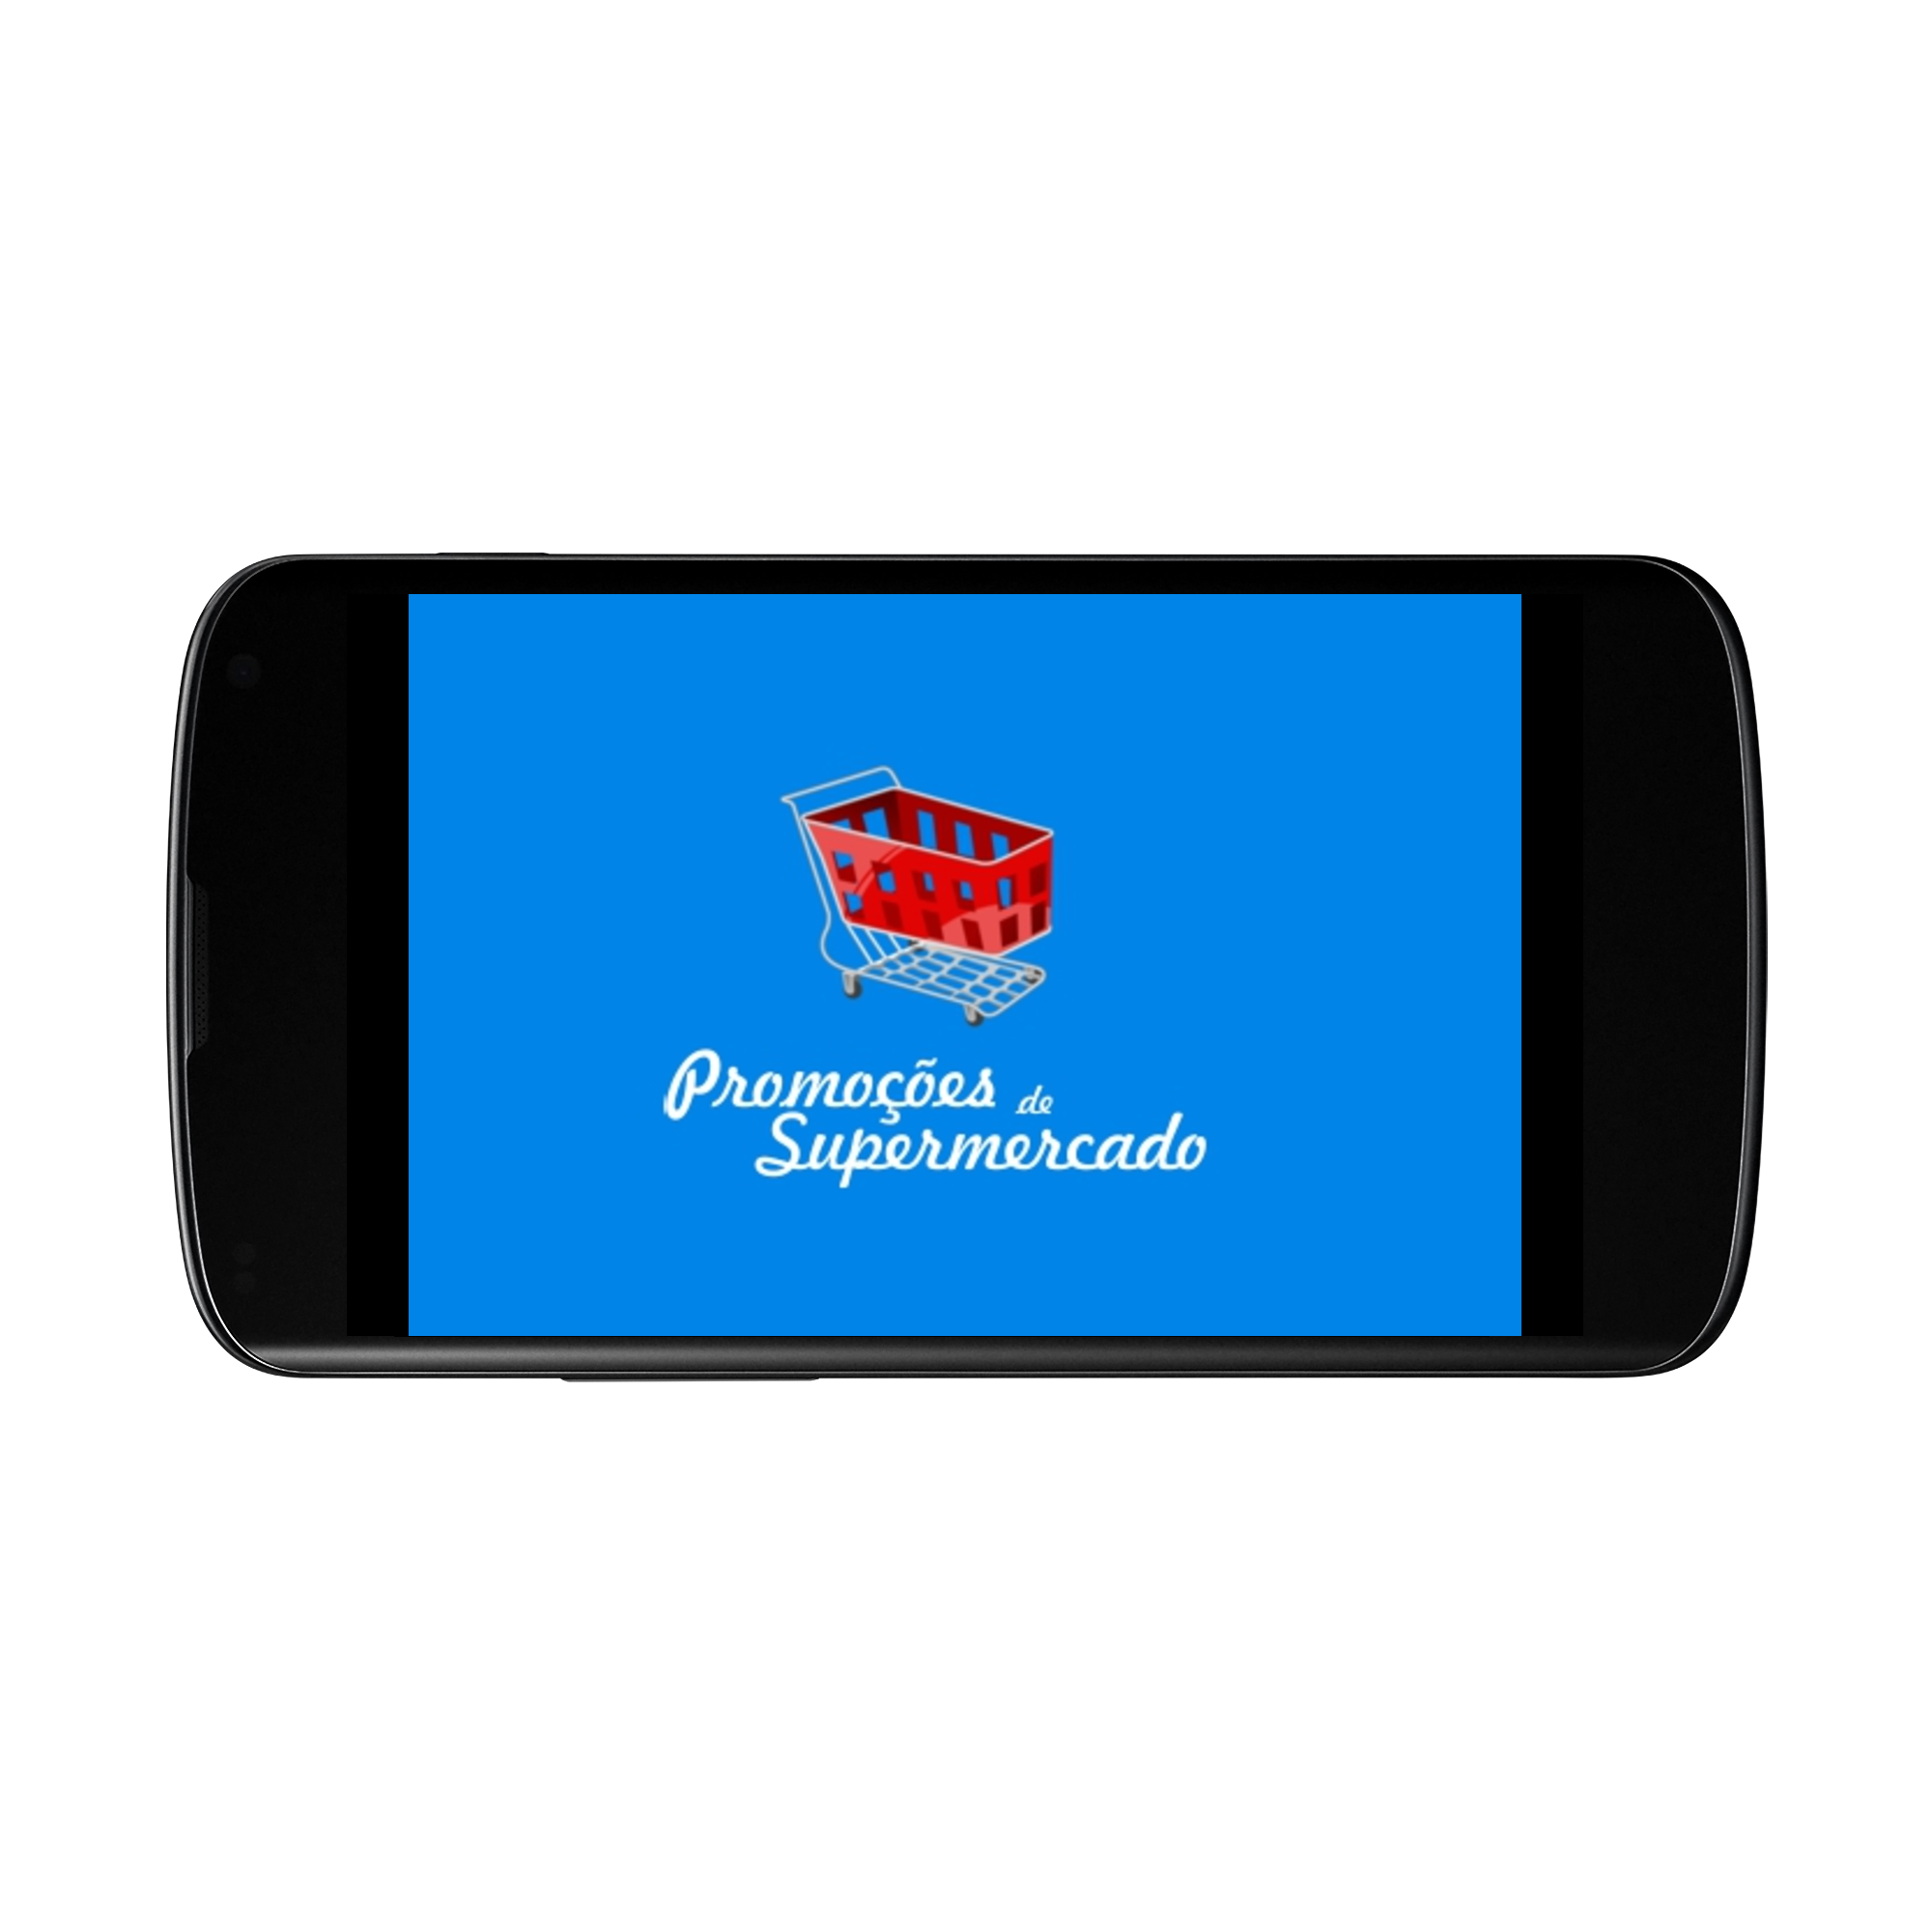 Android application Promoções de Supermercado screenshort